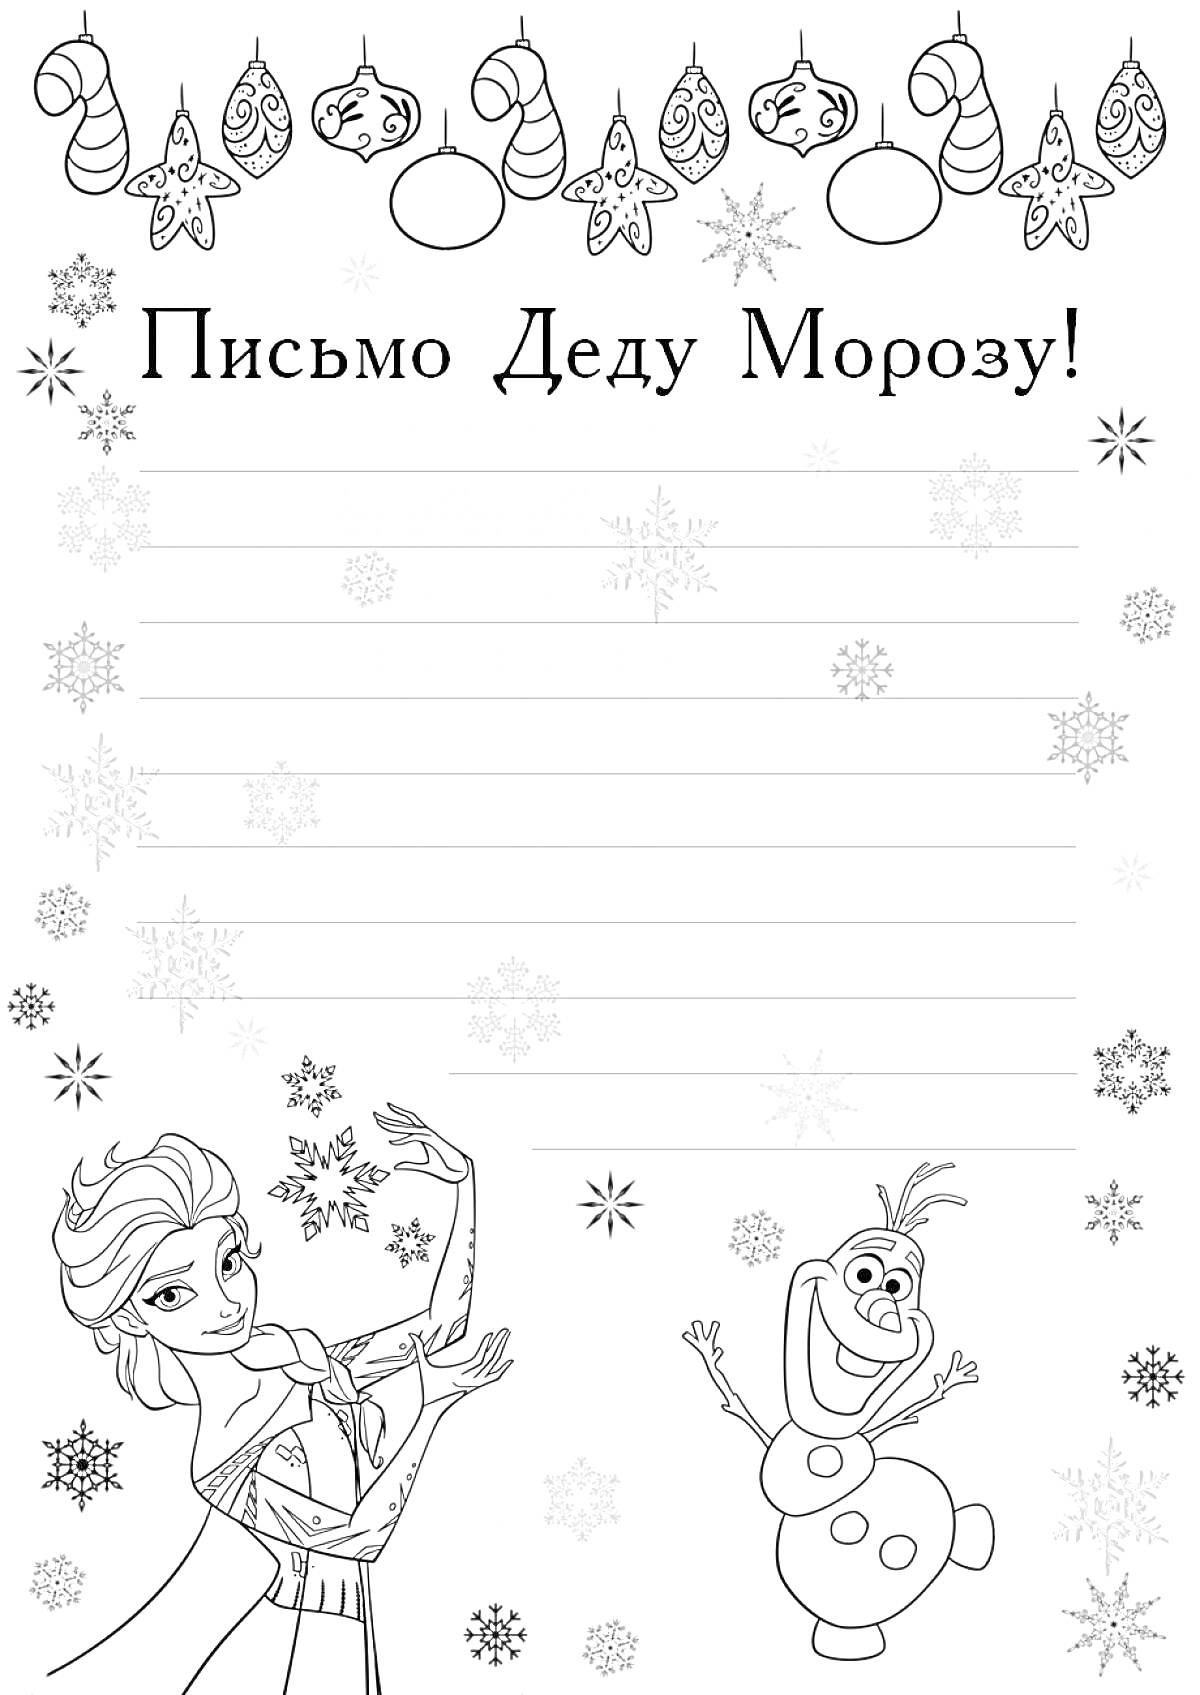 Бланк письма Деду Морозу с персонажами из мультфильма, снежинками, новогодними украшениями и надписью 